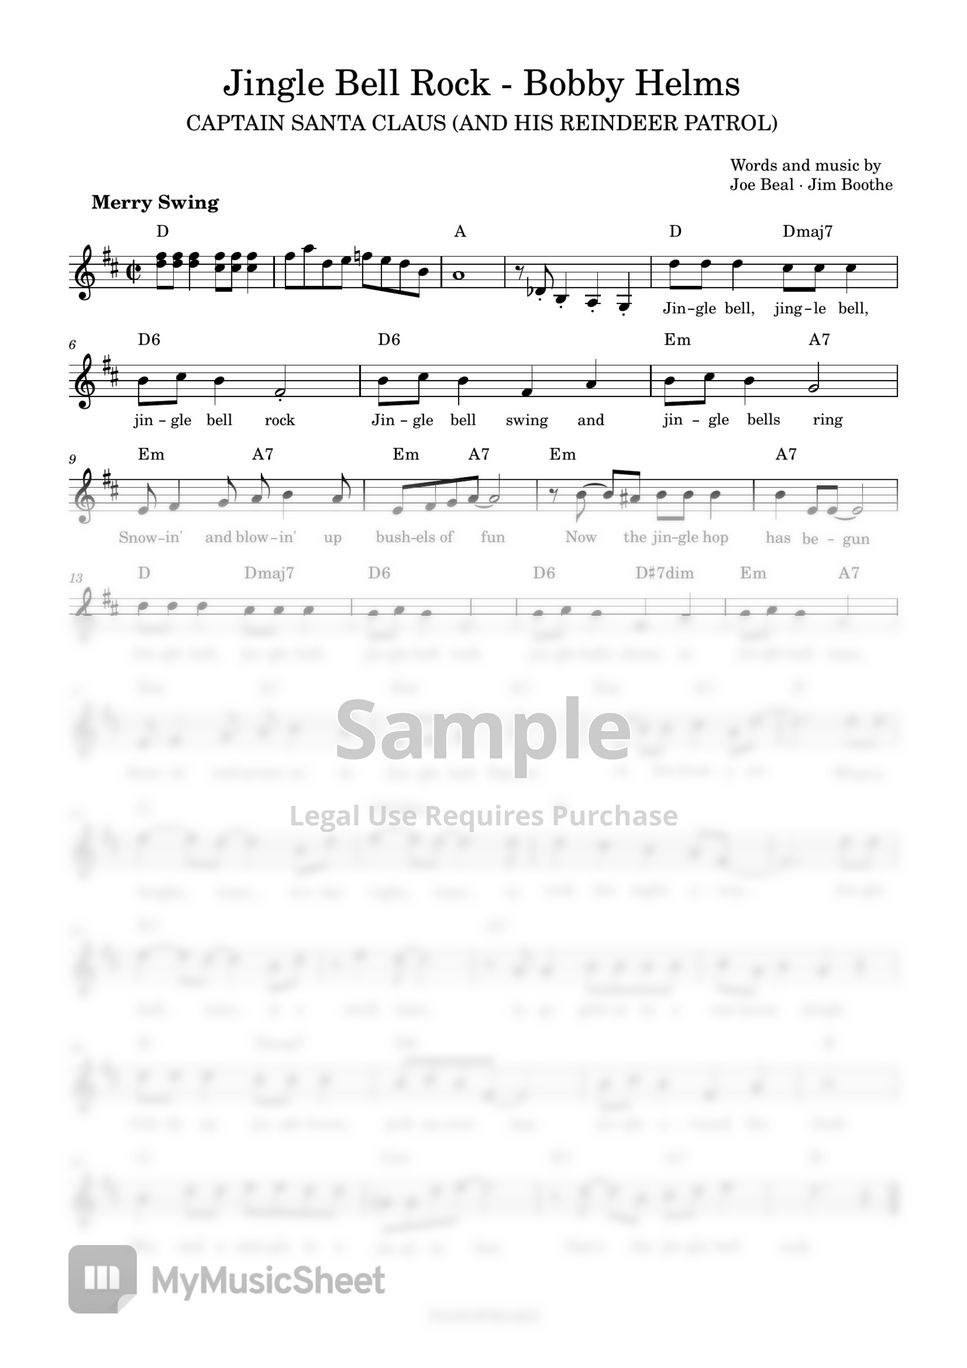 Bobby Helms - Jingle Bell Rock by PianoFreaks